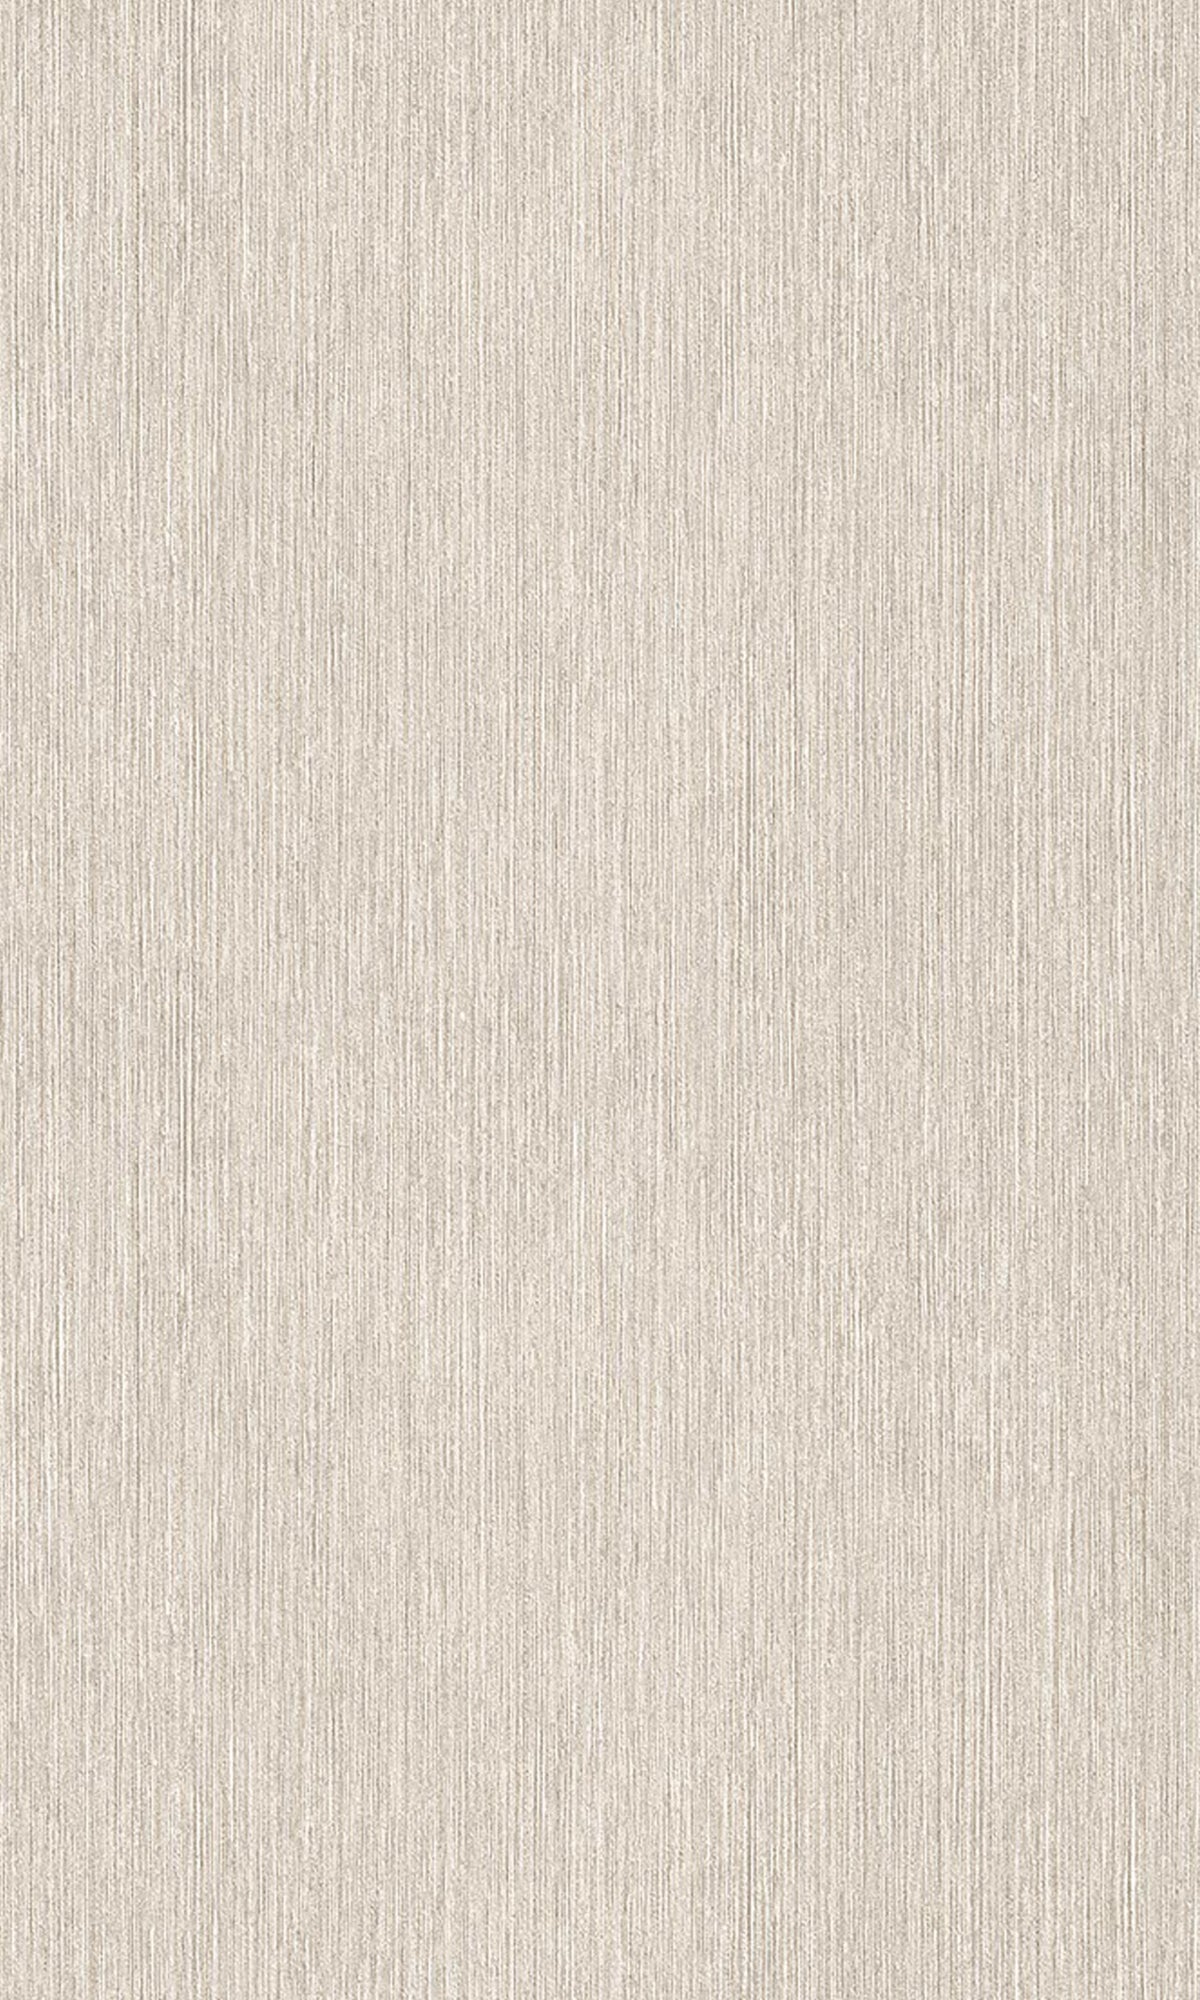 Light Brown Vertical Plain Textured Wallpaper R9282